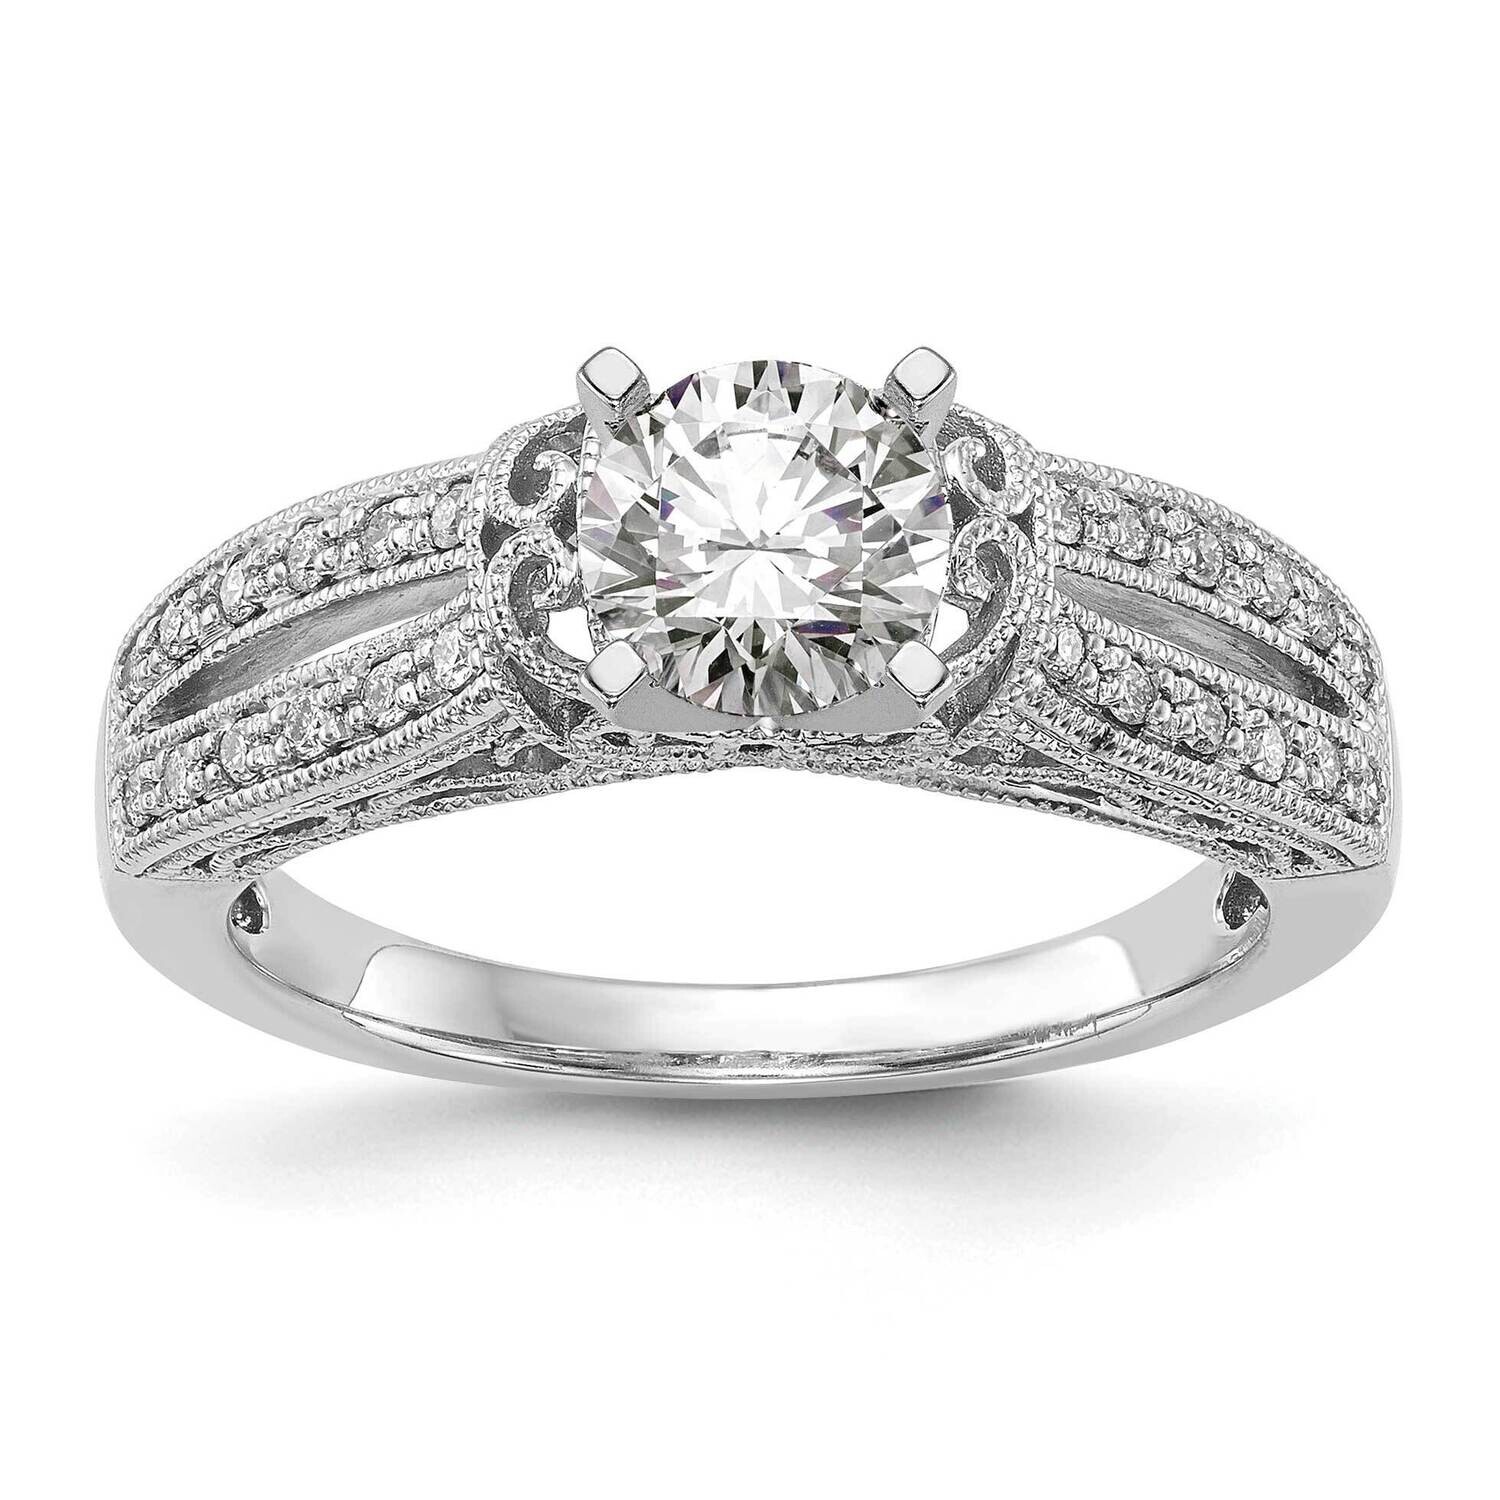 Peg Set 1/6 Carat Diamond Semi-Mount Engagement Ring 14k White Gold RM2805E-017-WAA